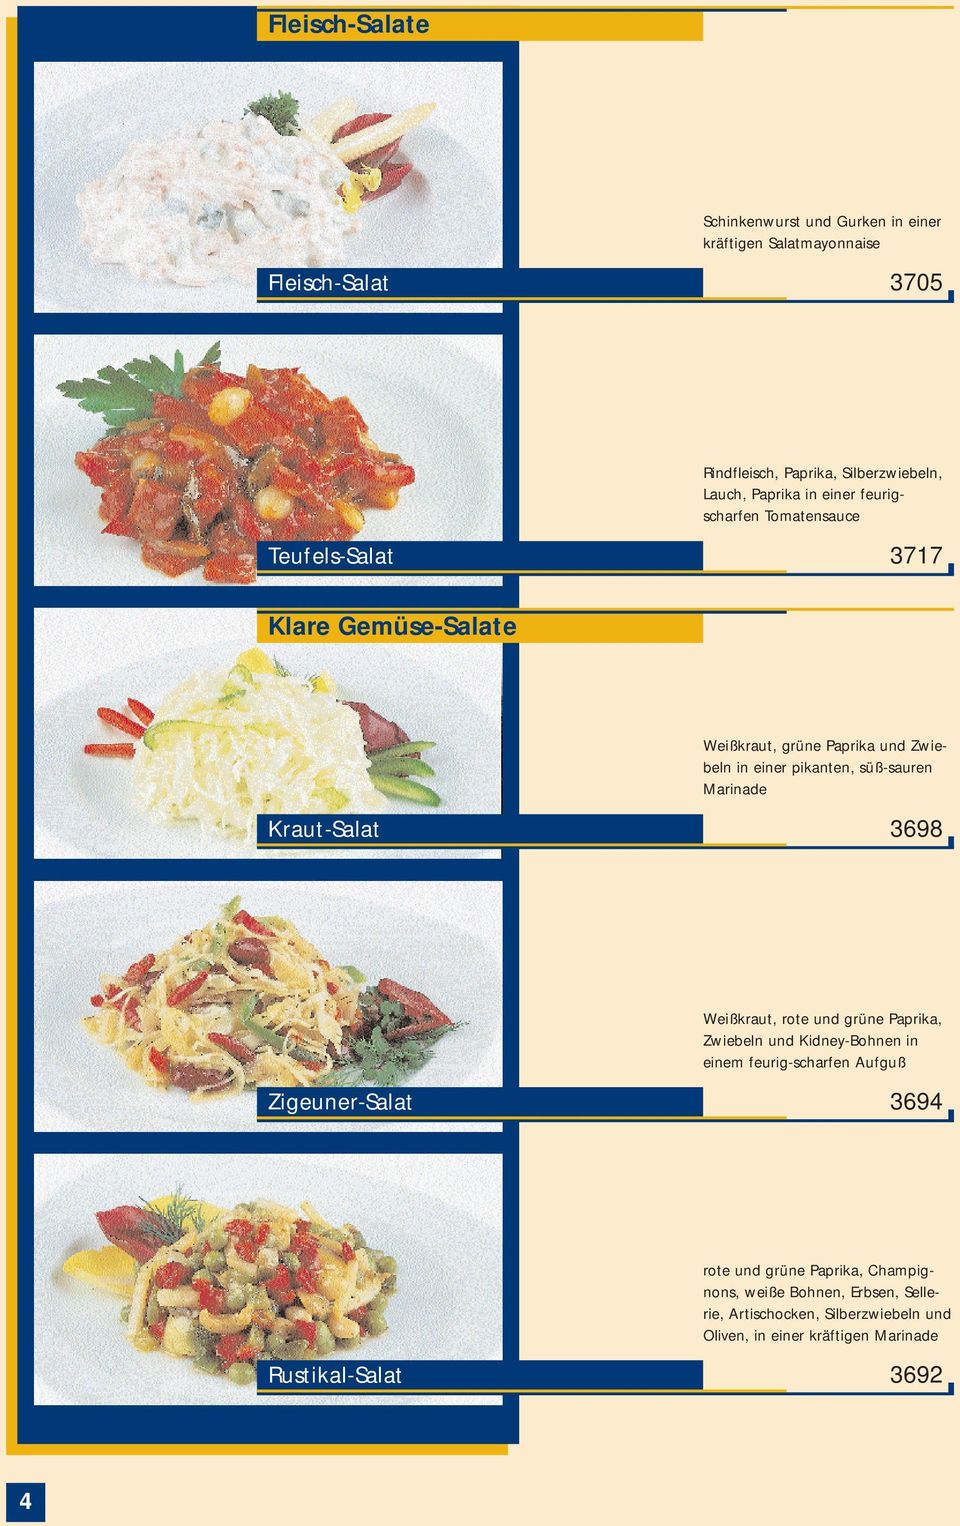 Marinade Kraut-Salat 3698 Weißkraut, rote und grüne Paprika, Zwiebeln und Kidney-Bohnen in einem feurig-scharfen Aufguß Zigeuner-Salat 3694 rote